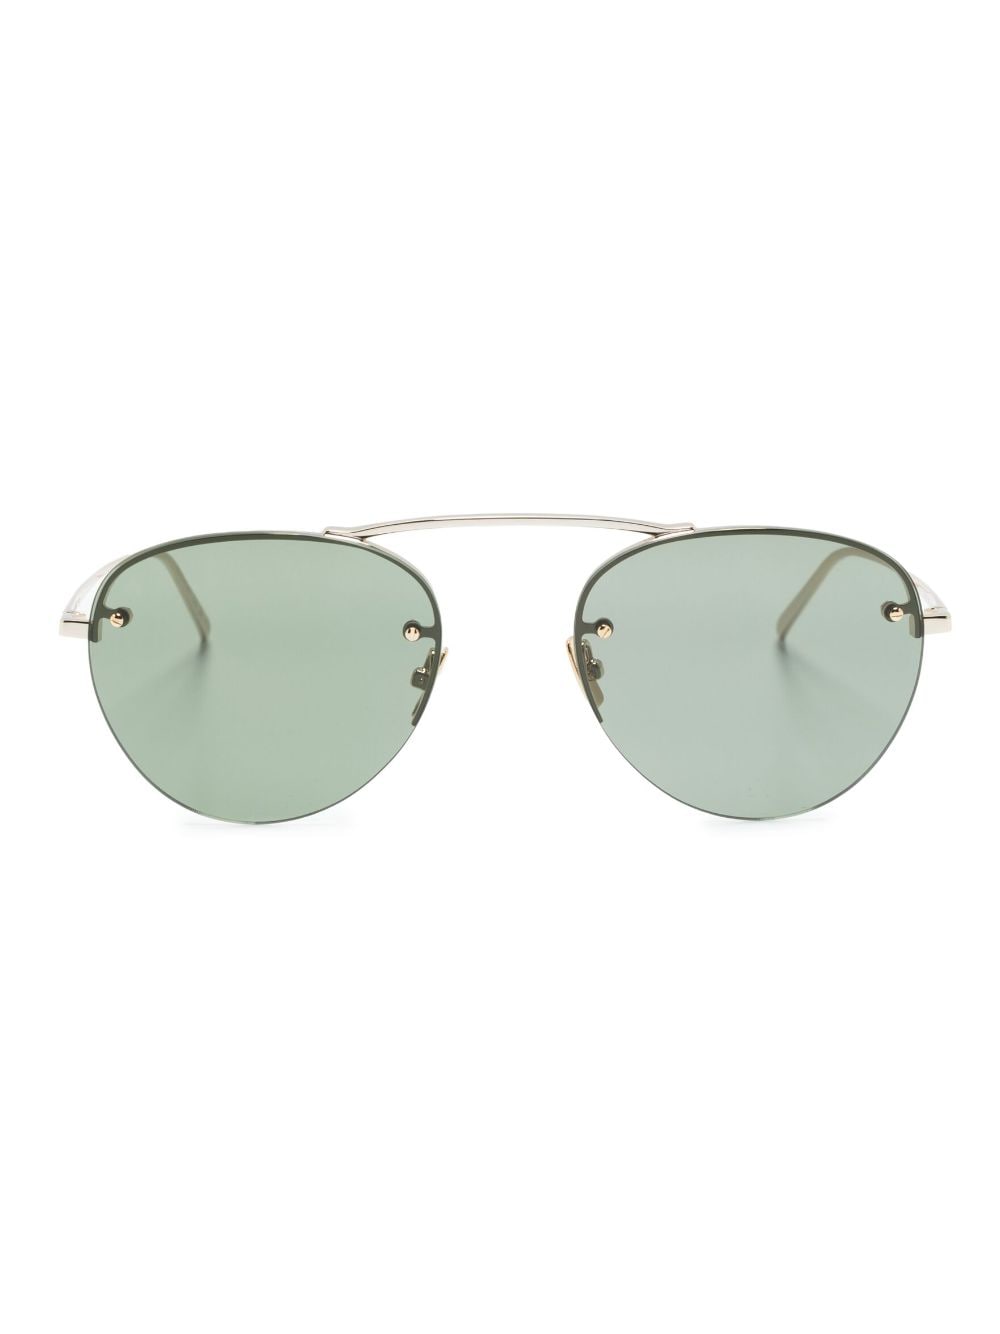 Saint Laurent Eyewear SL 575 round-frame sunglasses - Gold von Saint Laurent Eyewear